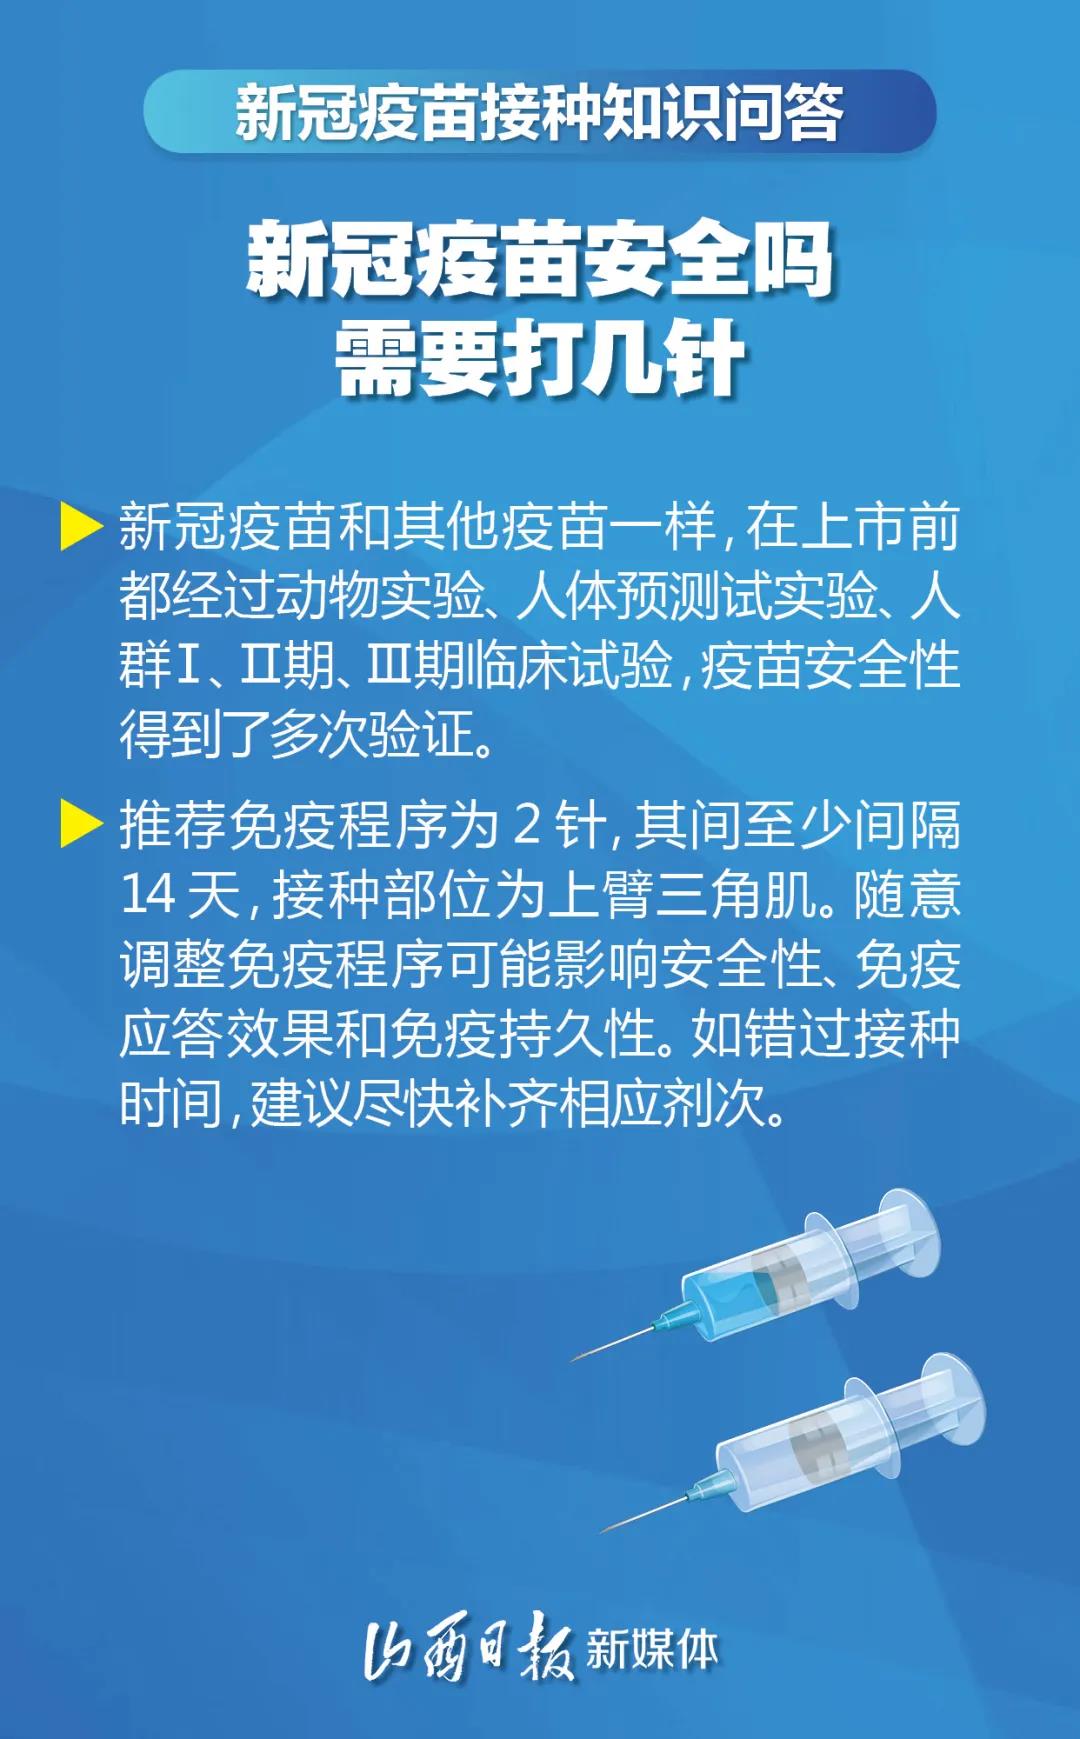 河南省多地启动新冠疫苗普通人群接种 单个接种点日接种量提高2至4倍_河南要闻_河南省人民政府门户网站